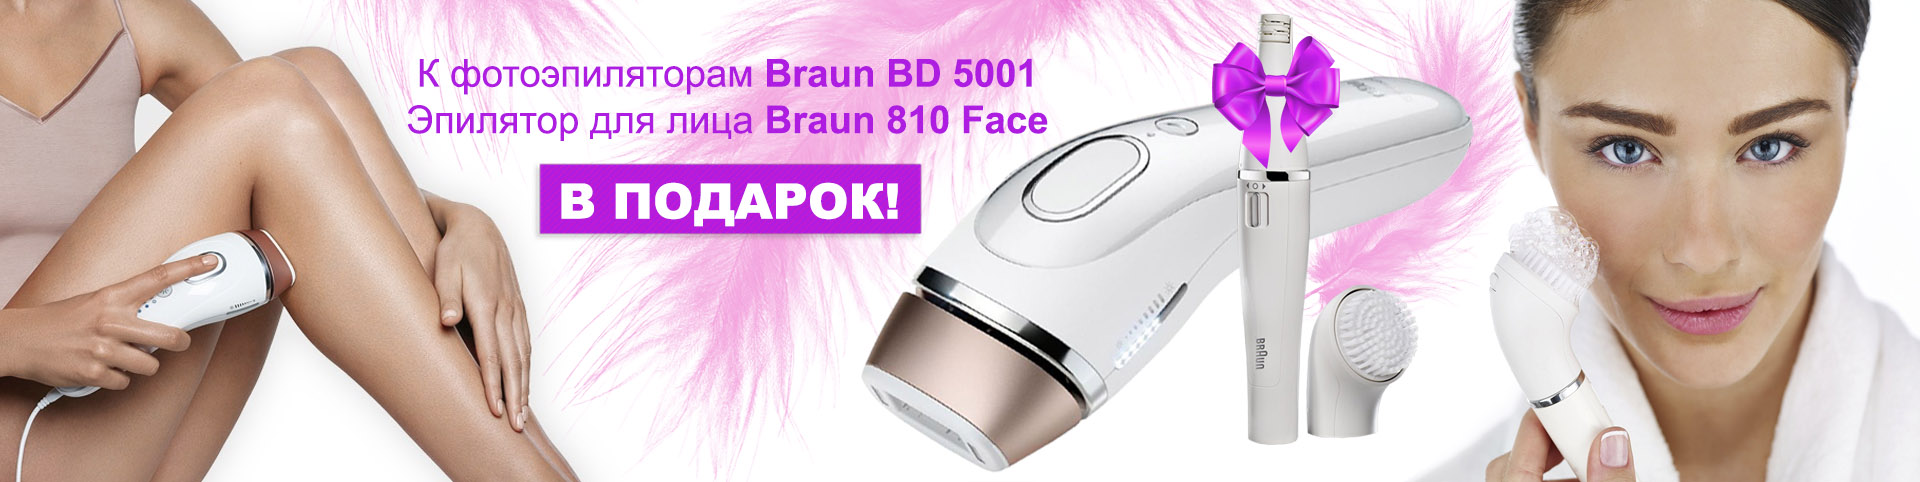 При покупке фотоэпилятора Braun BD 5001, эпилятор для лица в подарок